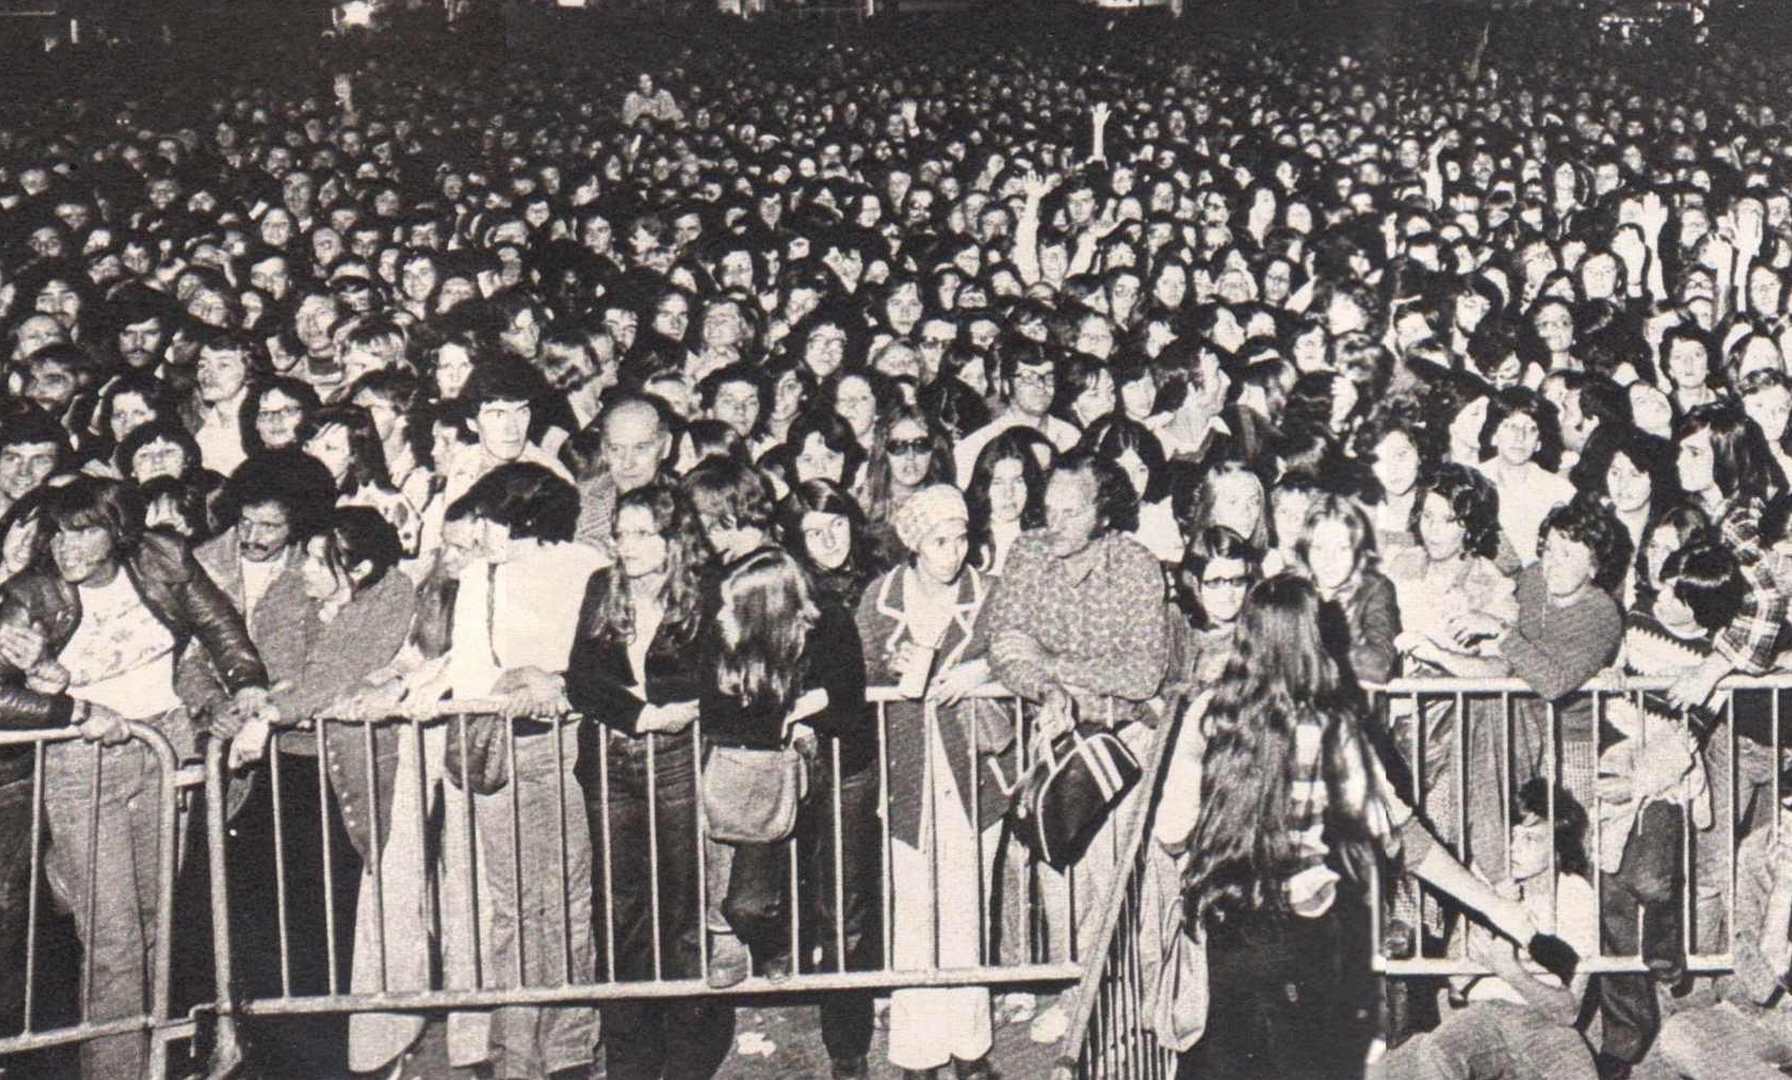 La foule pour le concert de Johnny et Sylvie Vartan à Montréal Place des Nations 1975